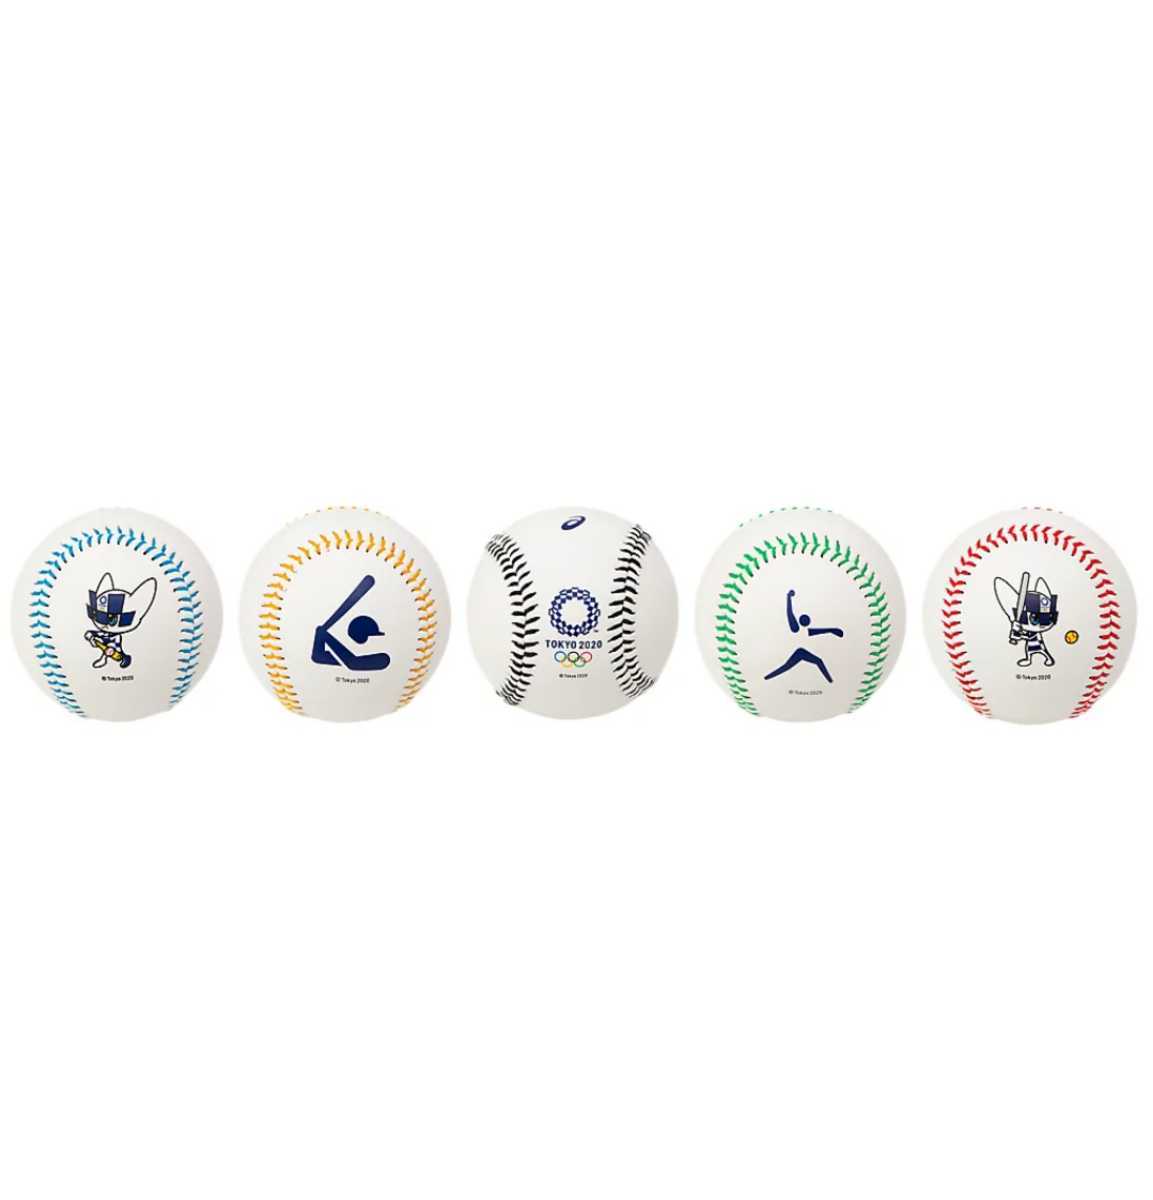 格安販売中 【送料無料】東京2020オリンピック 記念ボール全5種 野球 記念ボール